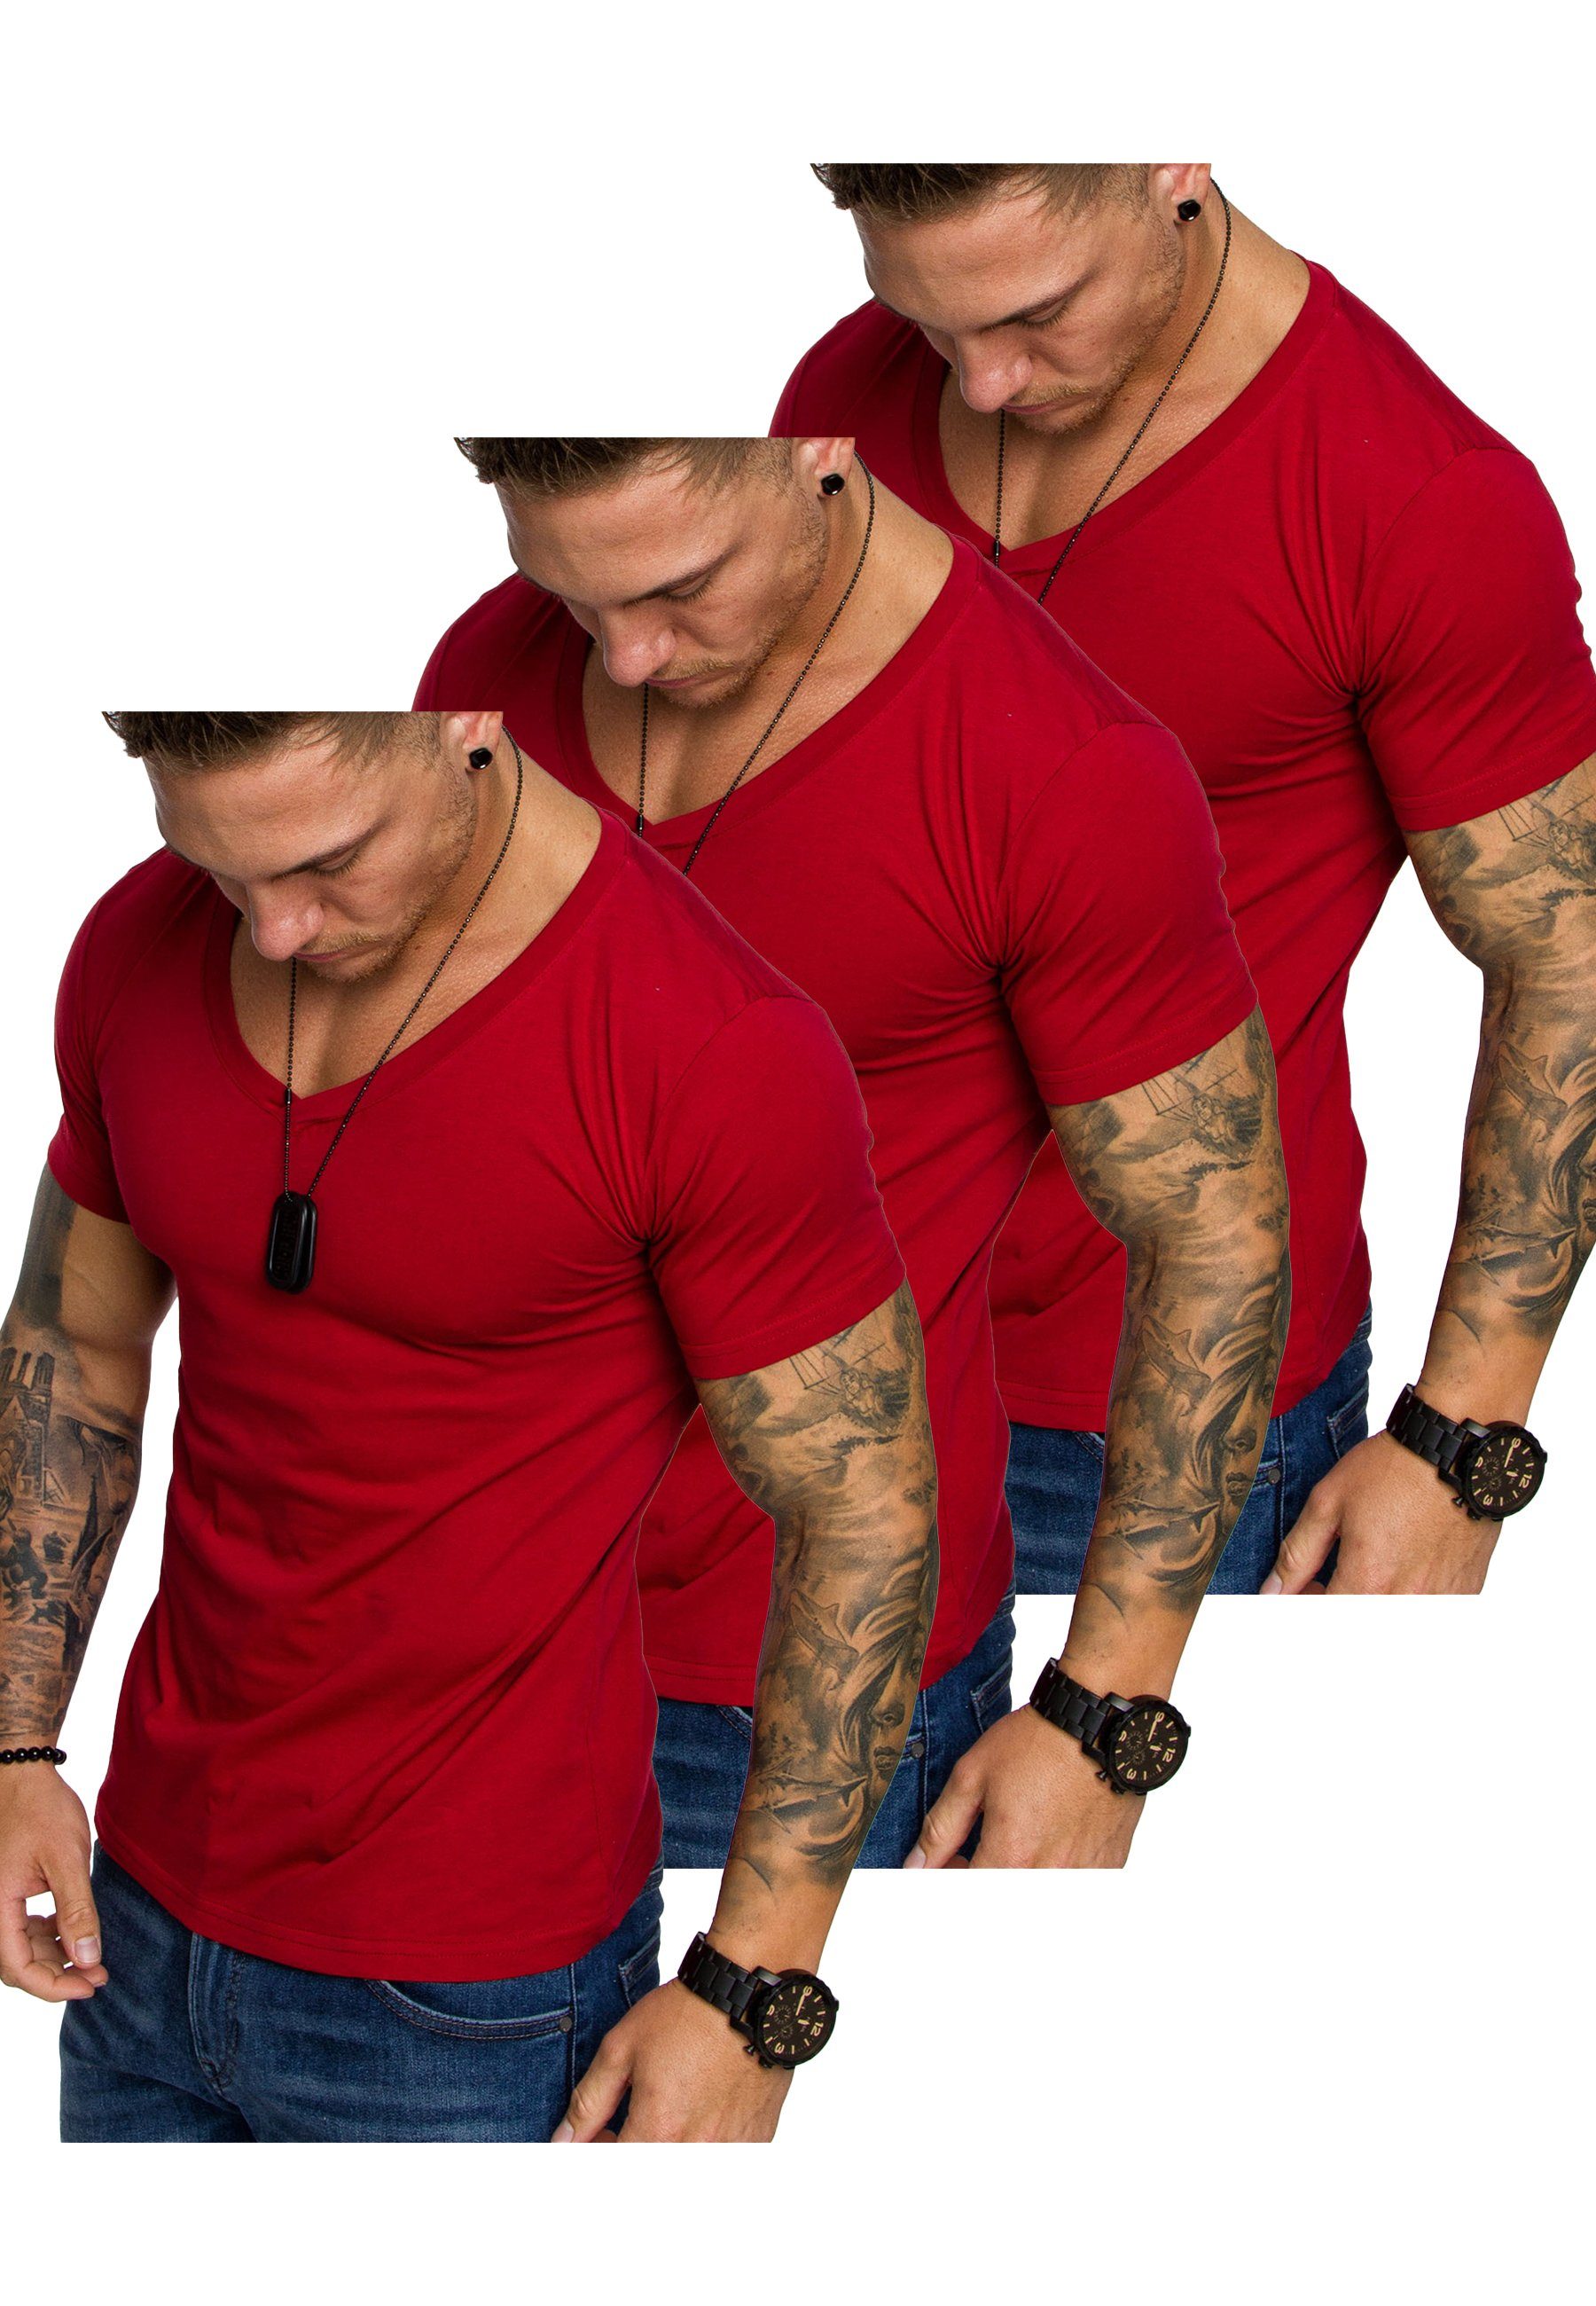 Amaci&Sons T-Shirt 3. EUGENE Herren 3er-Pack T-Shirts (3er-Pack) Herren Basic Oversize T-Shirt mit V-Ausschnitt (3x Rot)